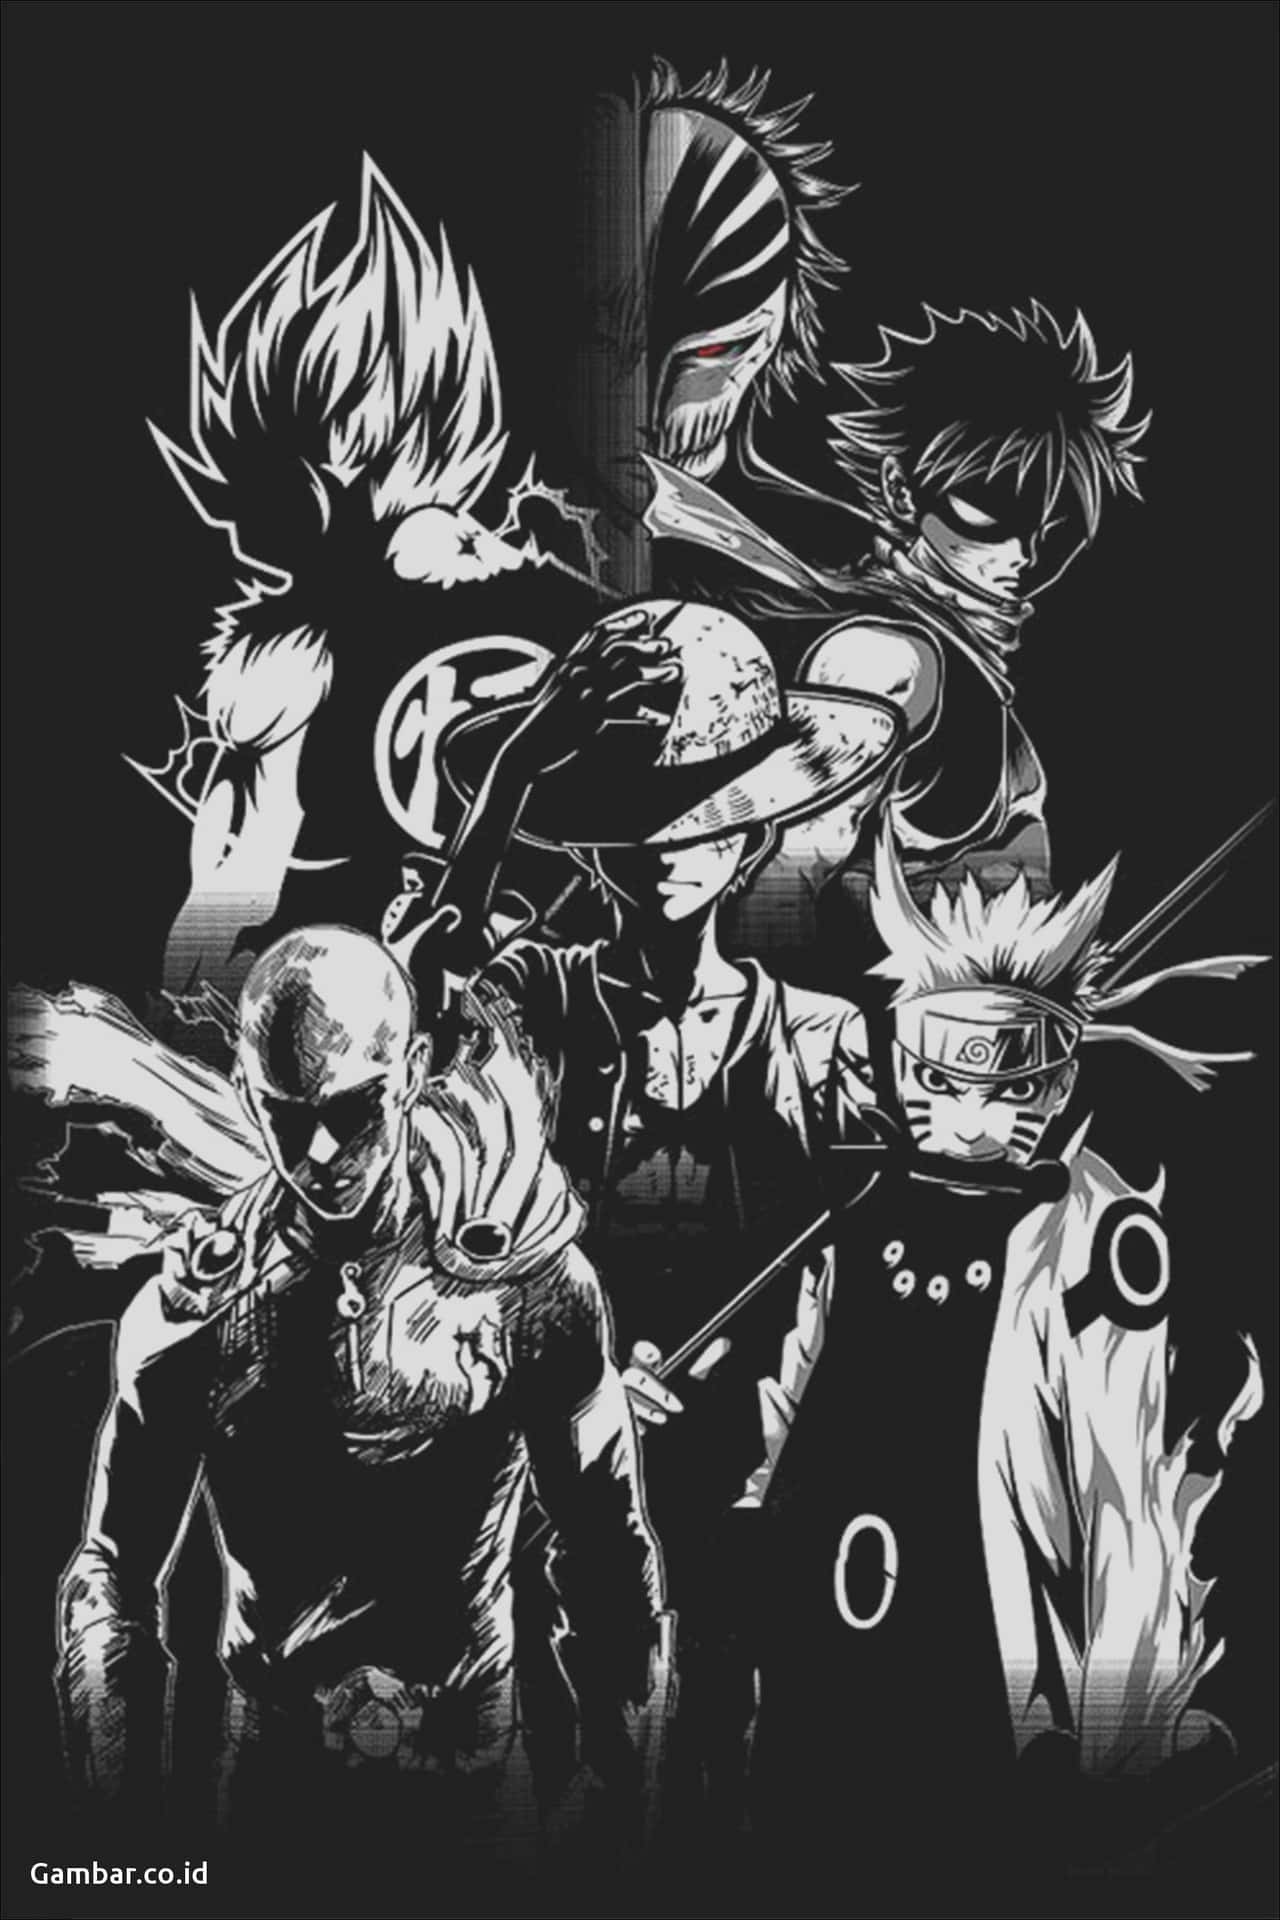 Dark Anime Wallpapers  Top 35 Best Dark Anime Wallpapers Download